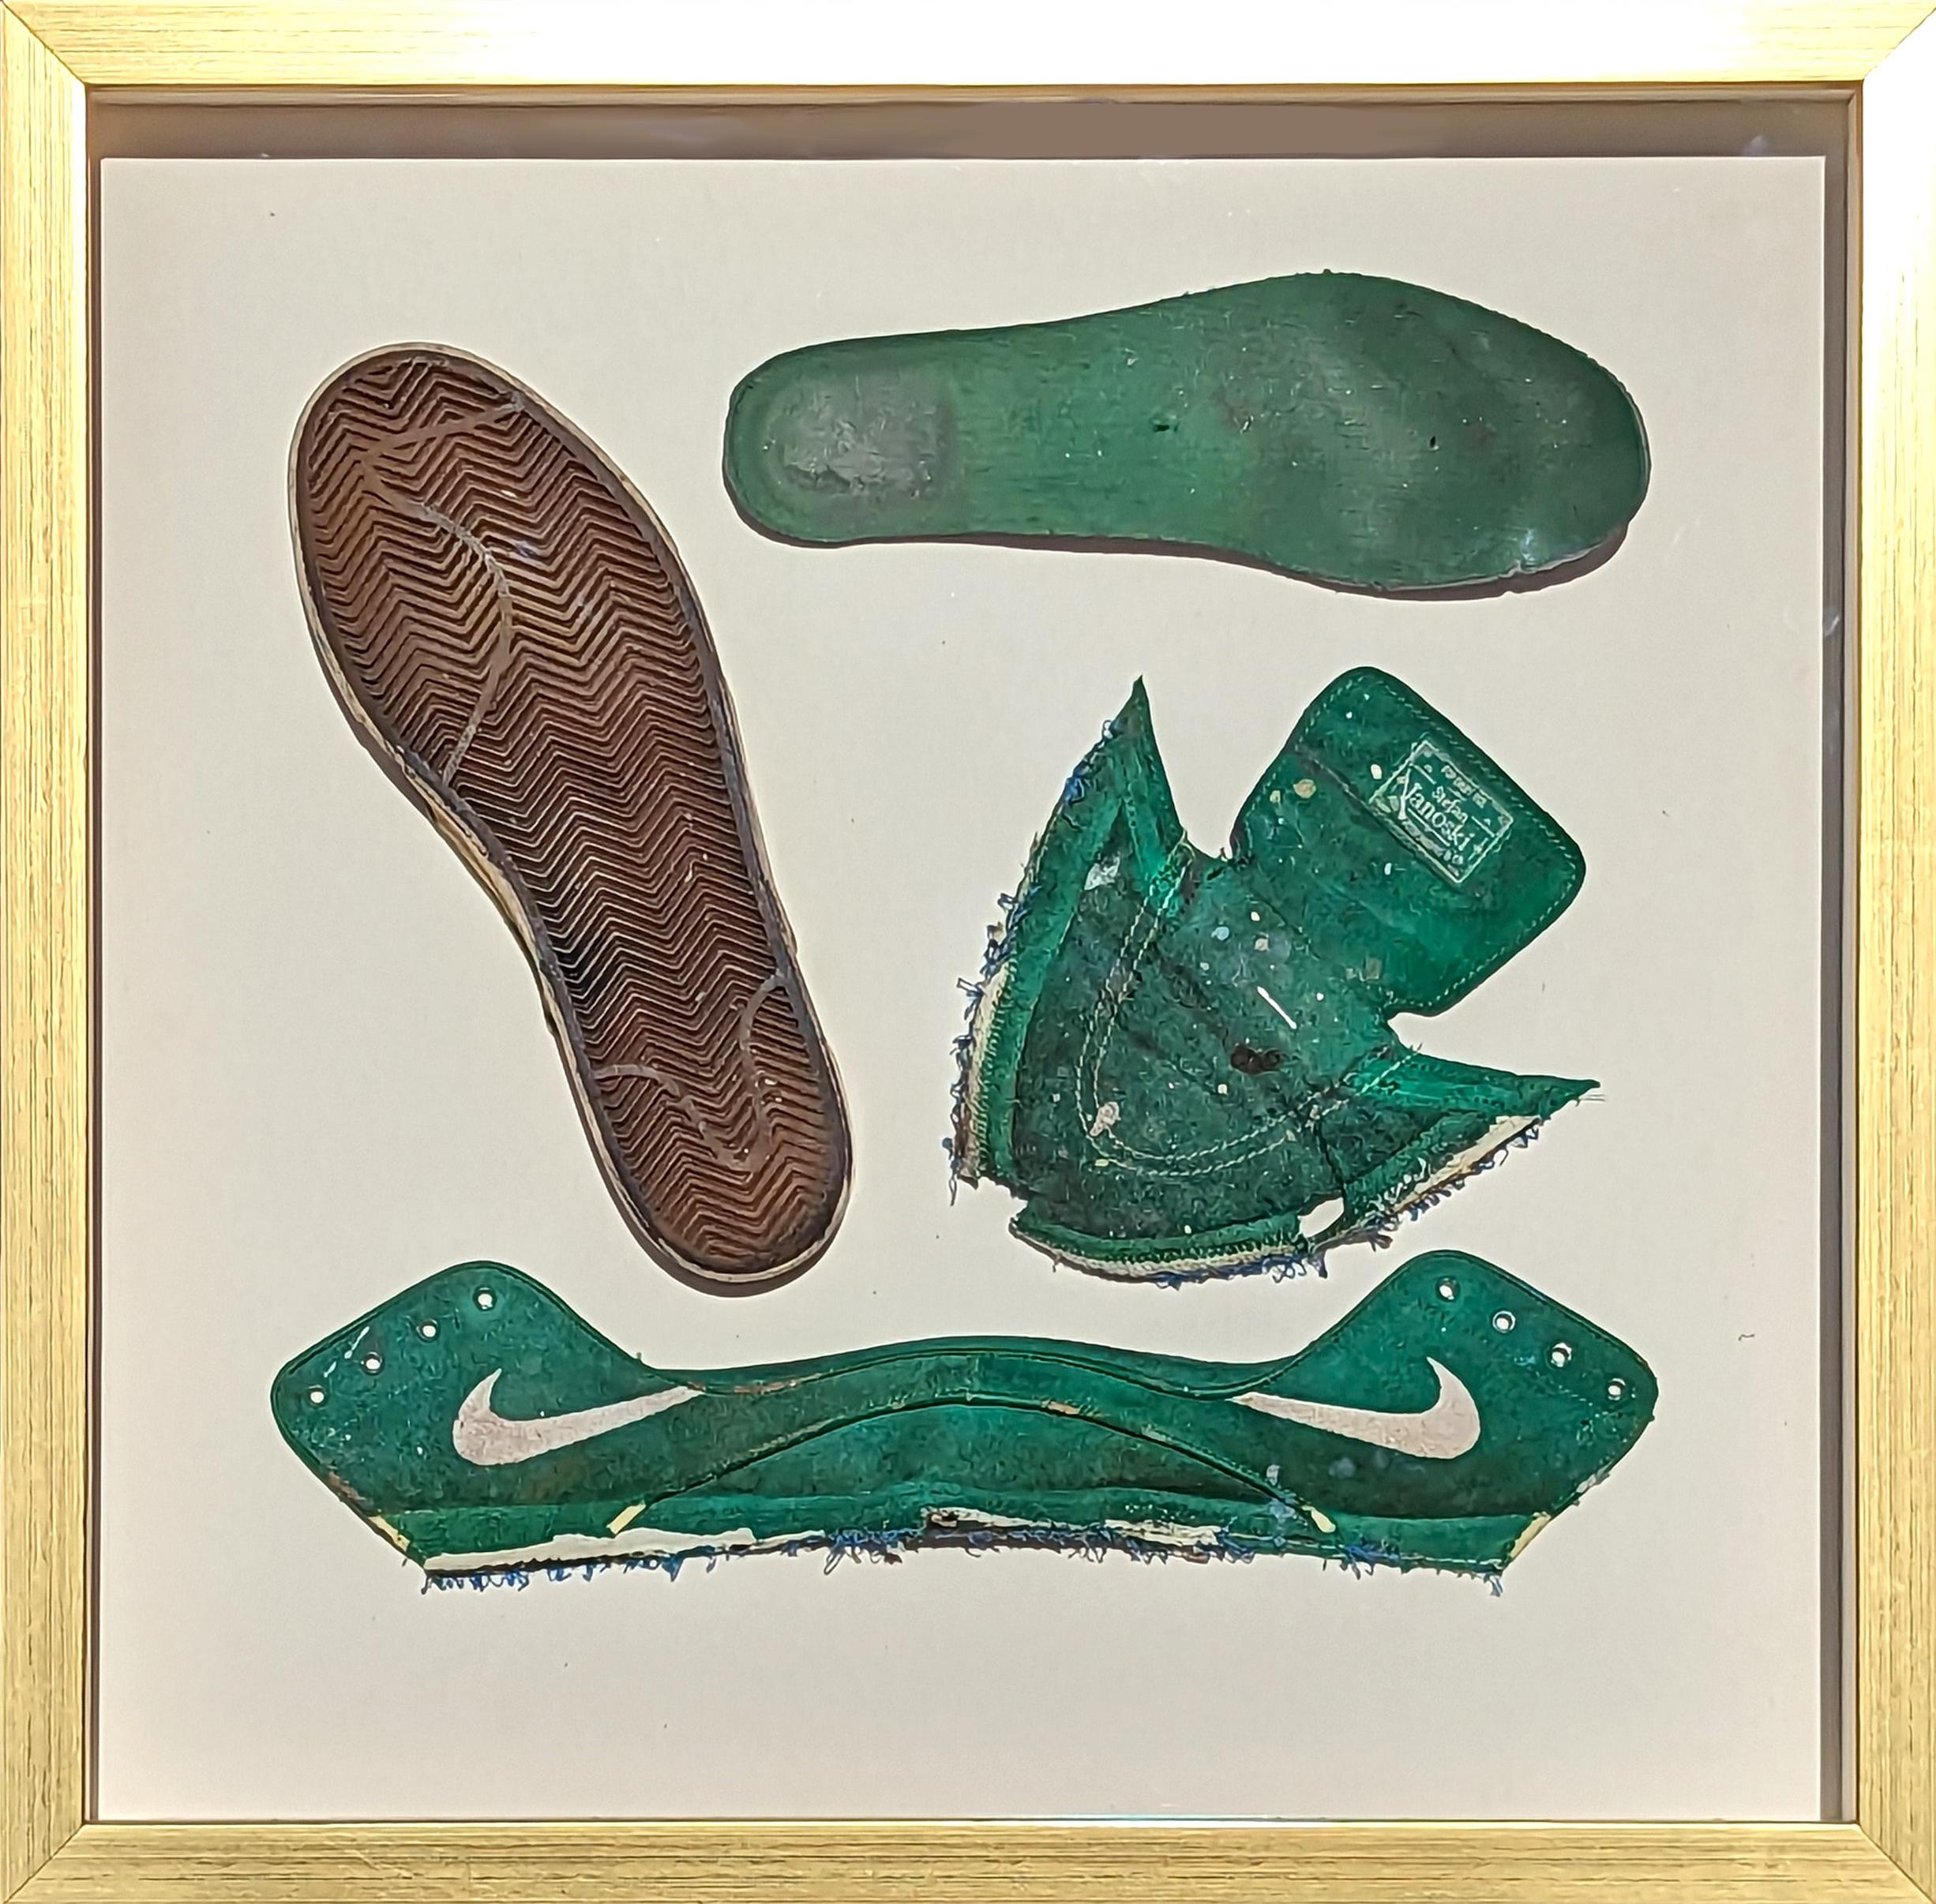 Tra' Slaughter Abstract Sculpture – Zeitgenössisches dekonstruiertes Gemälde in Mischtechnik und gefundenem Objekt, grünes Schuh